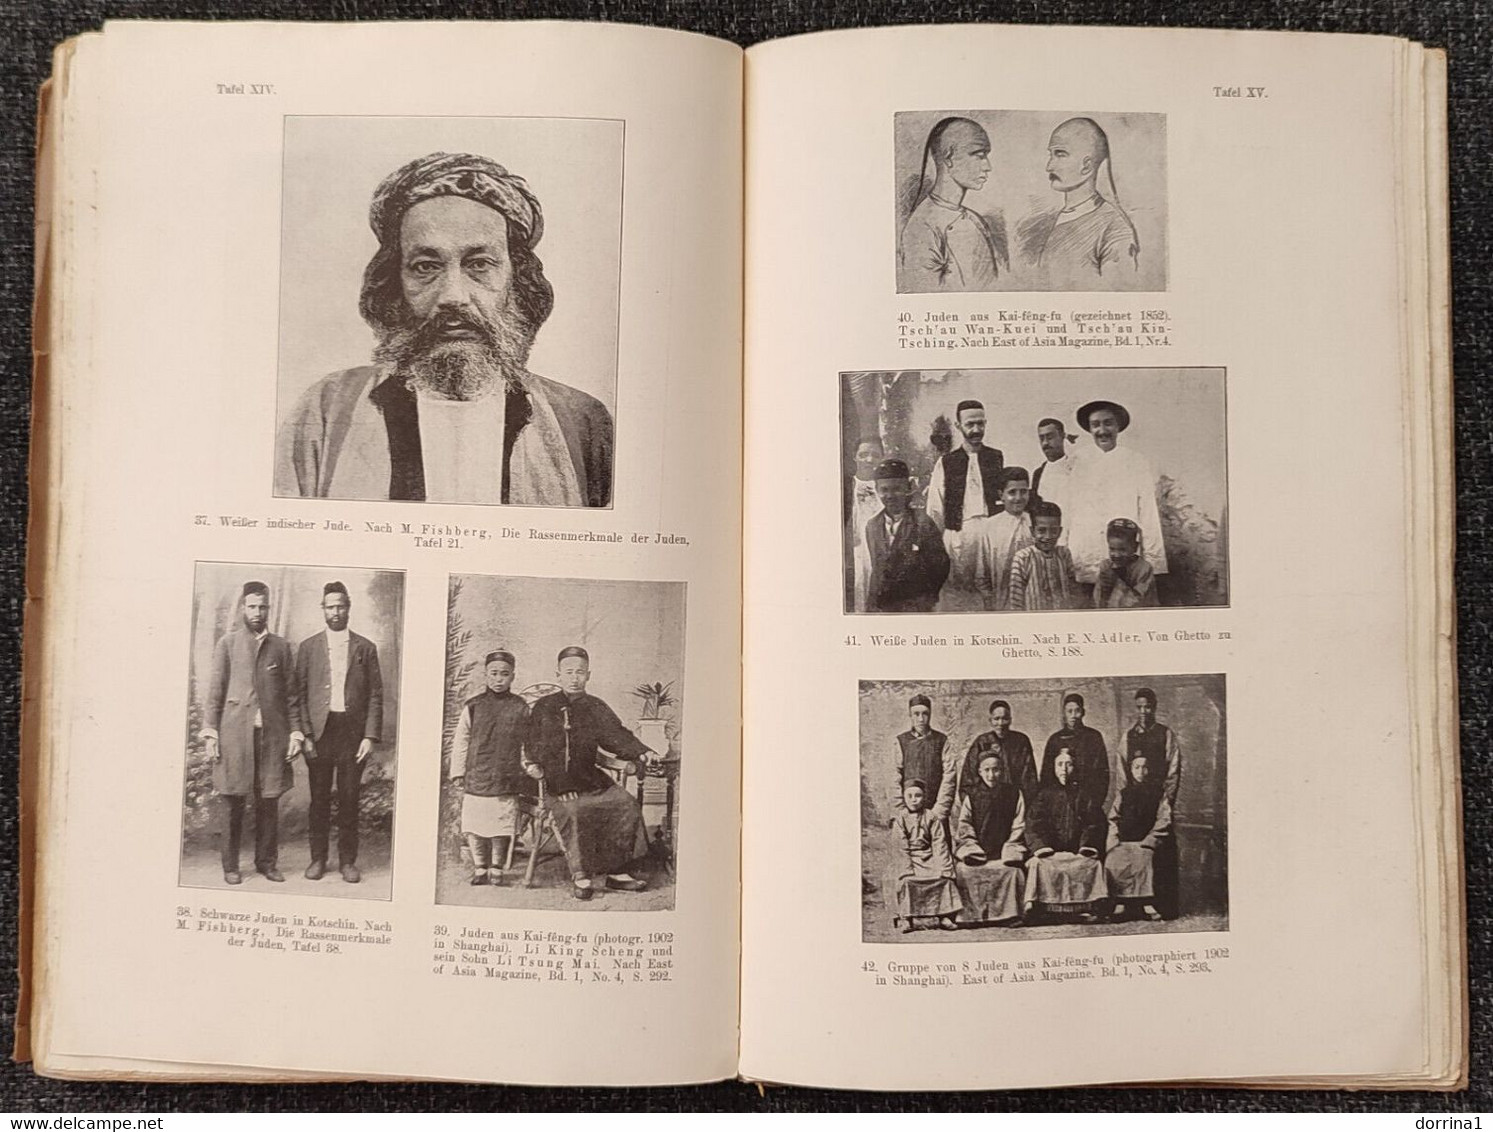 Sigmund Feist stammeskunde der juden 1925 Jewish Judaica book - Juif Juive Israelite